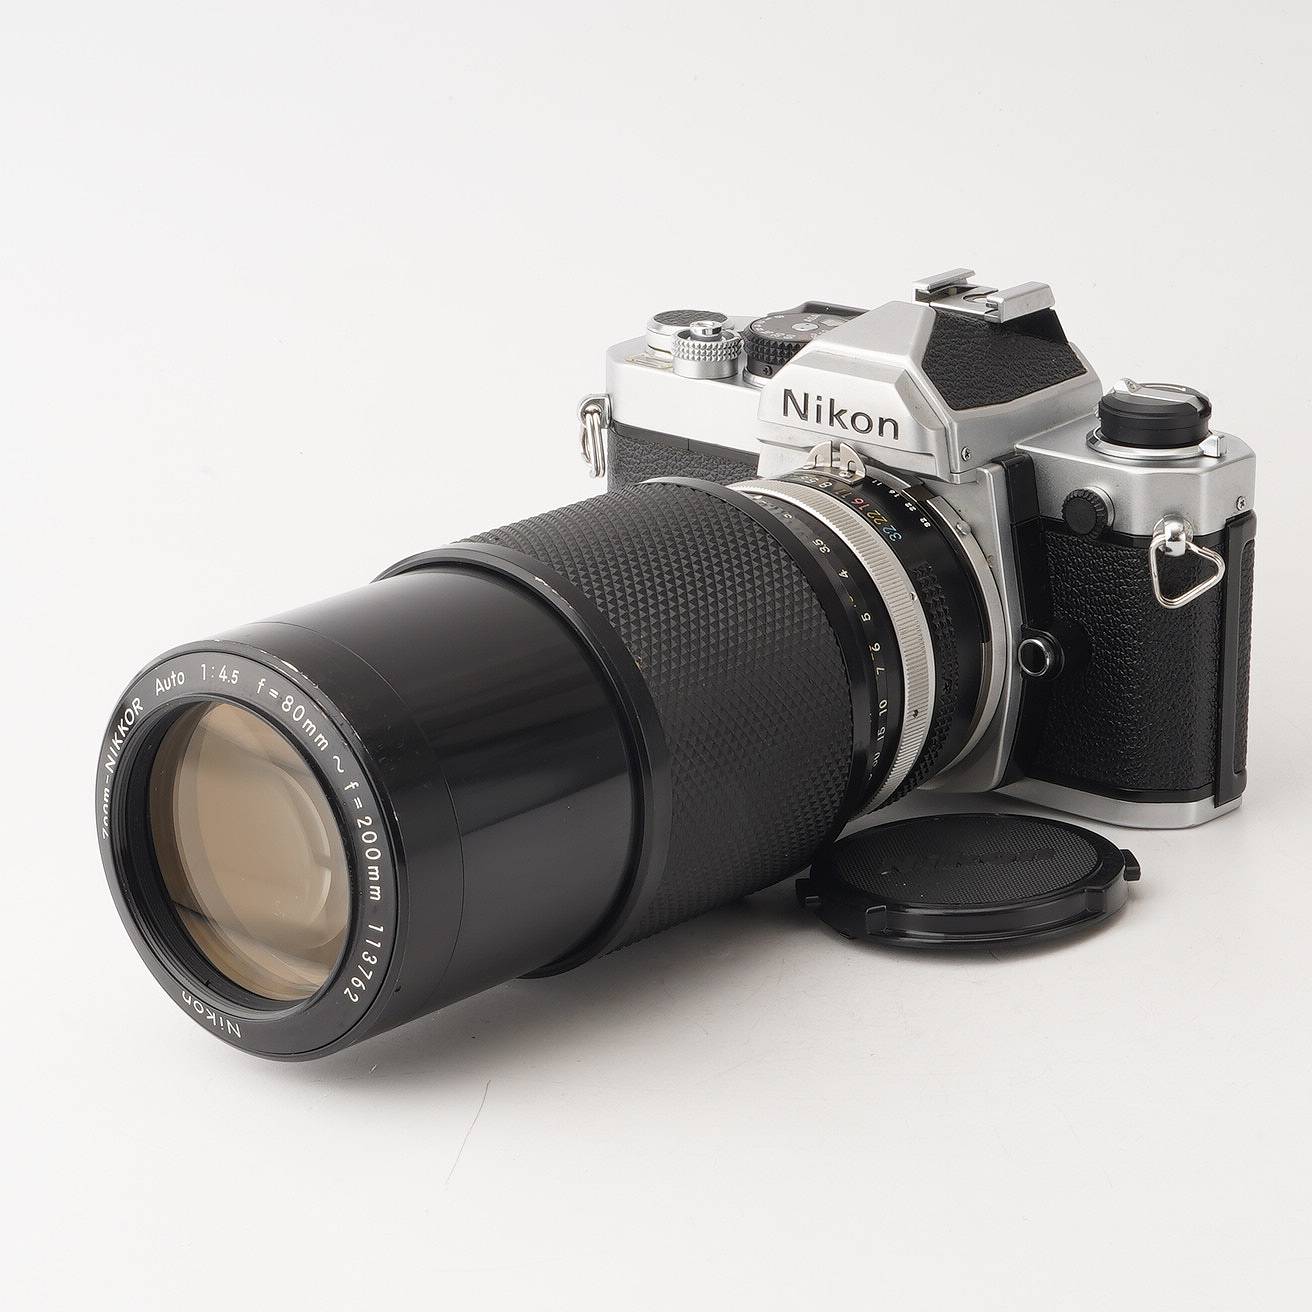 ニコン Nikon Nikko Ai-s Zoom 80-200mm F4 f/4 :20230313095817